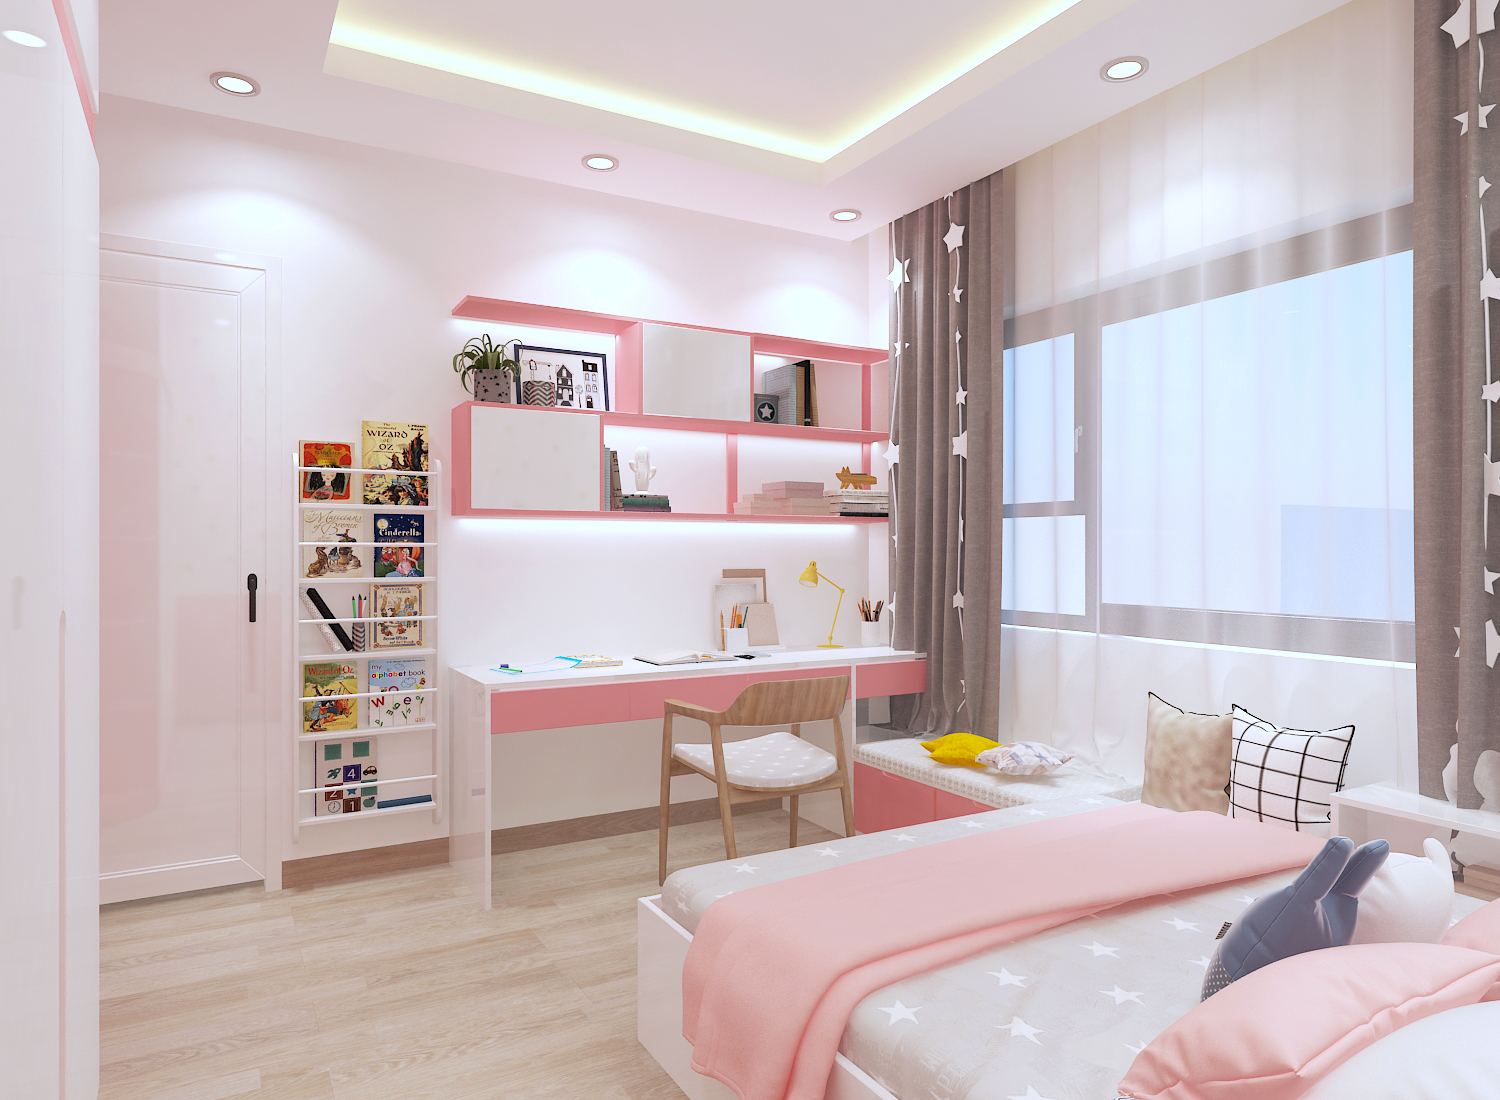 Thiết kế nội thất phòng ngủ cho con gái với sắc hồng dịu ngọt.